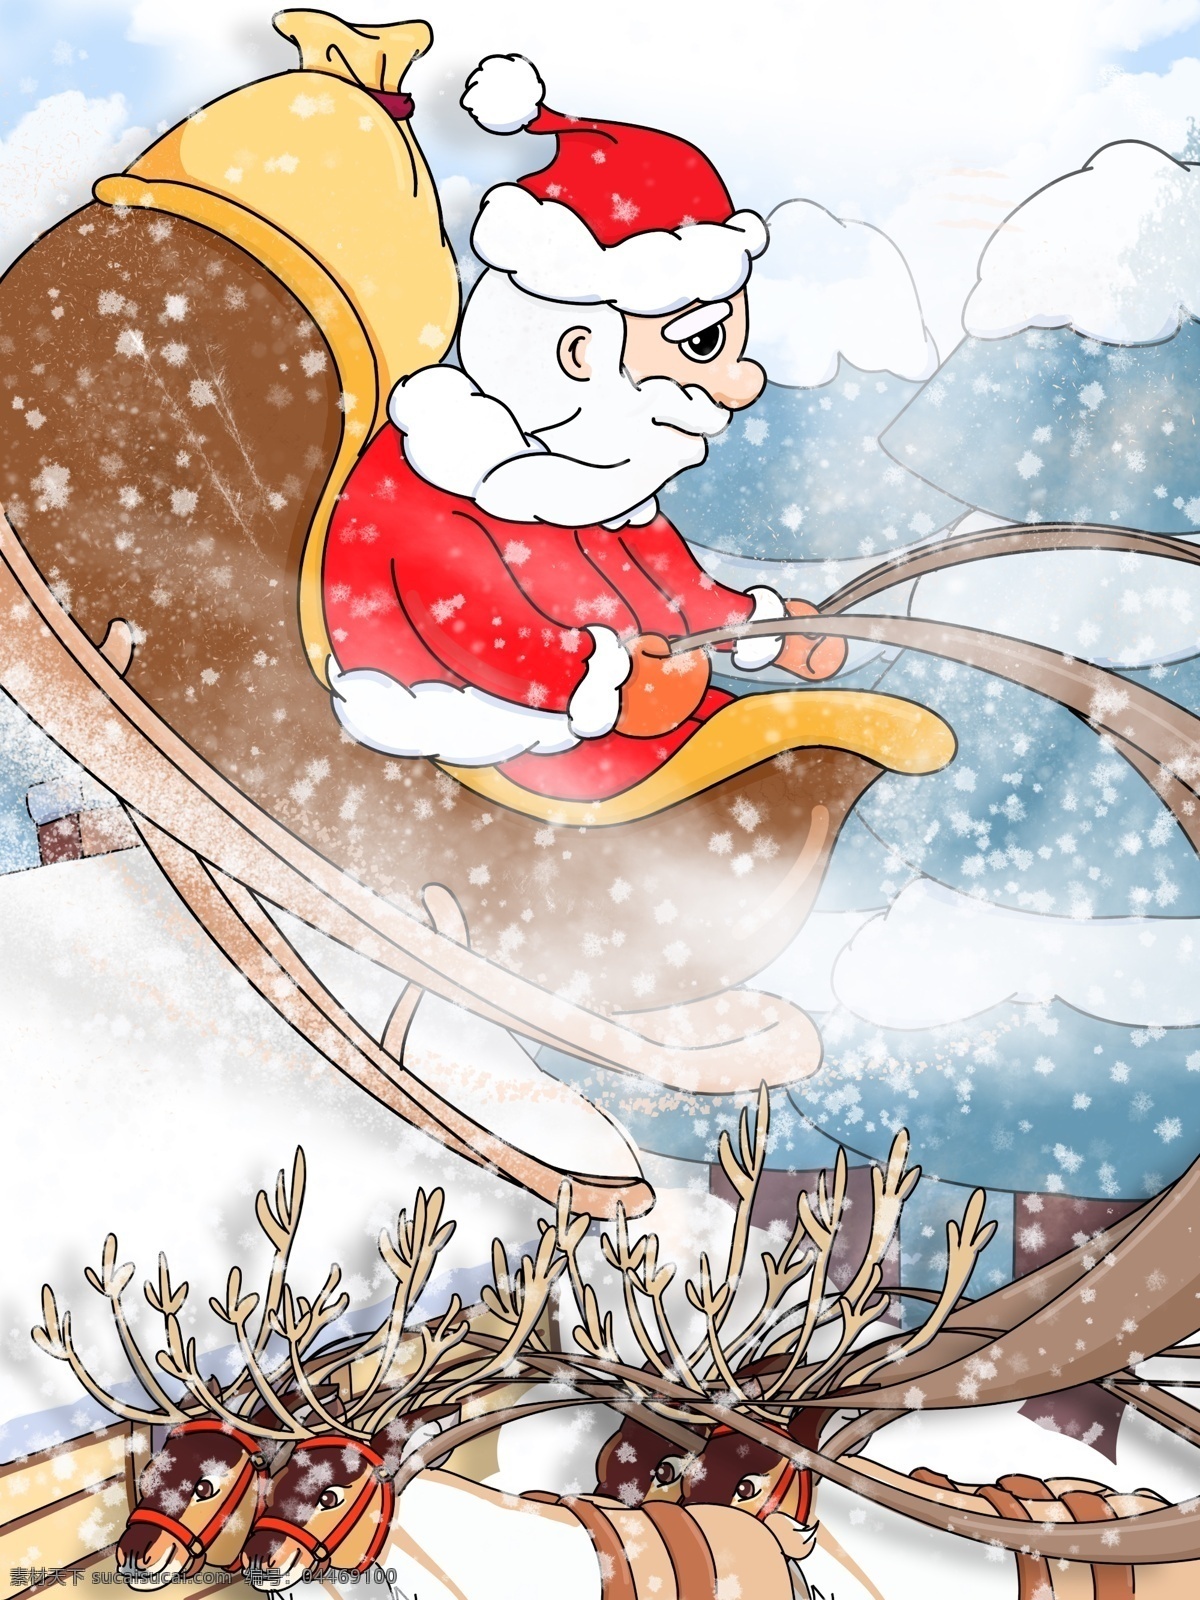 原创 插画 圣诞节 卡通 圣诞老人 雪橇